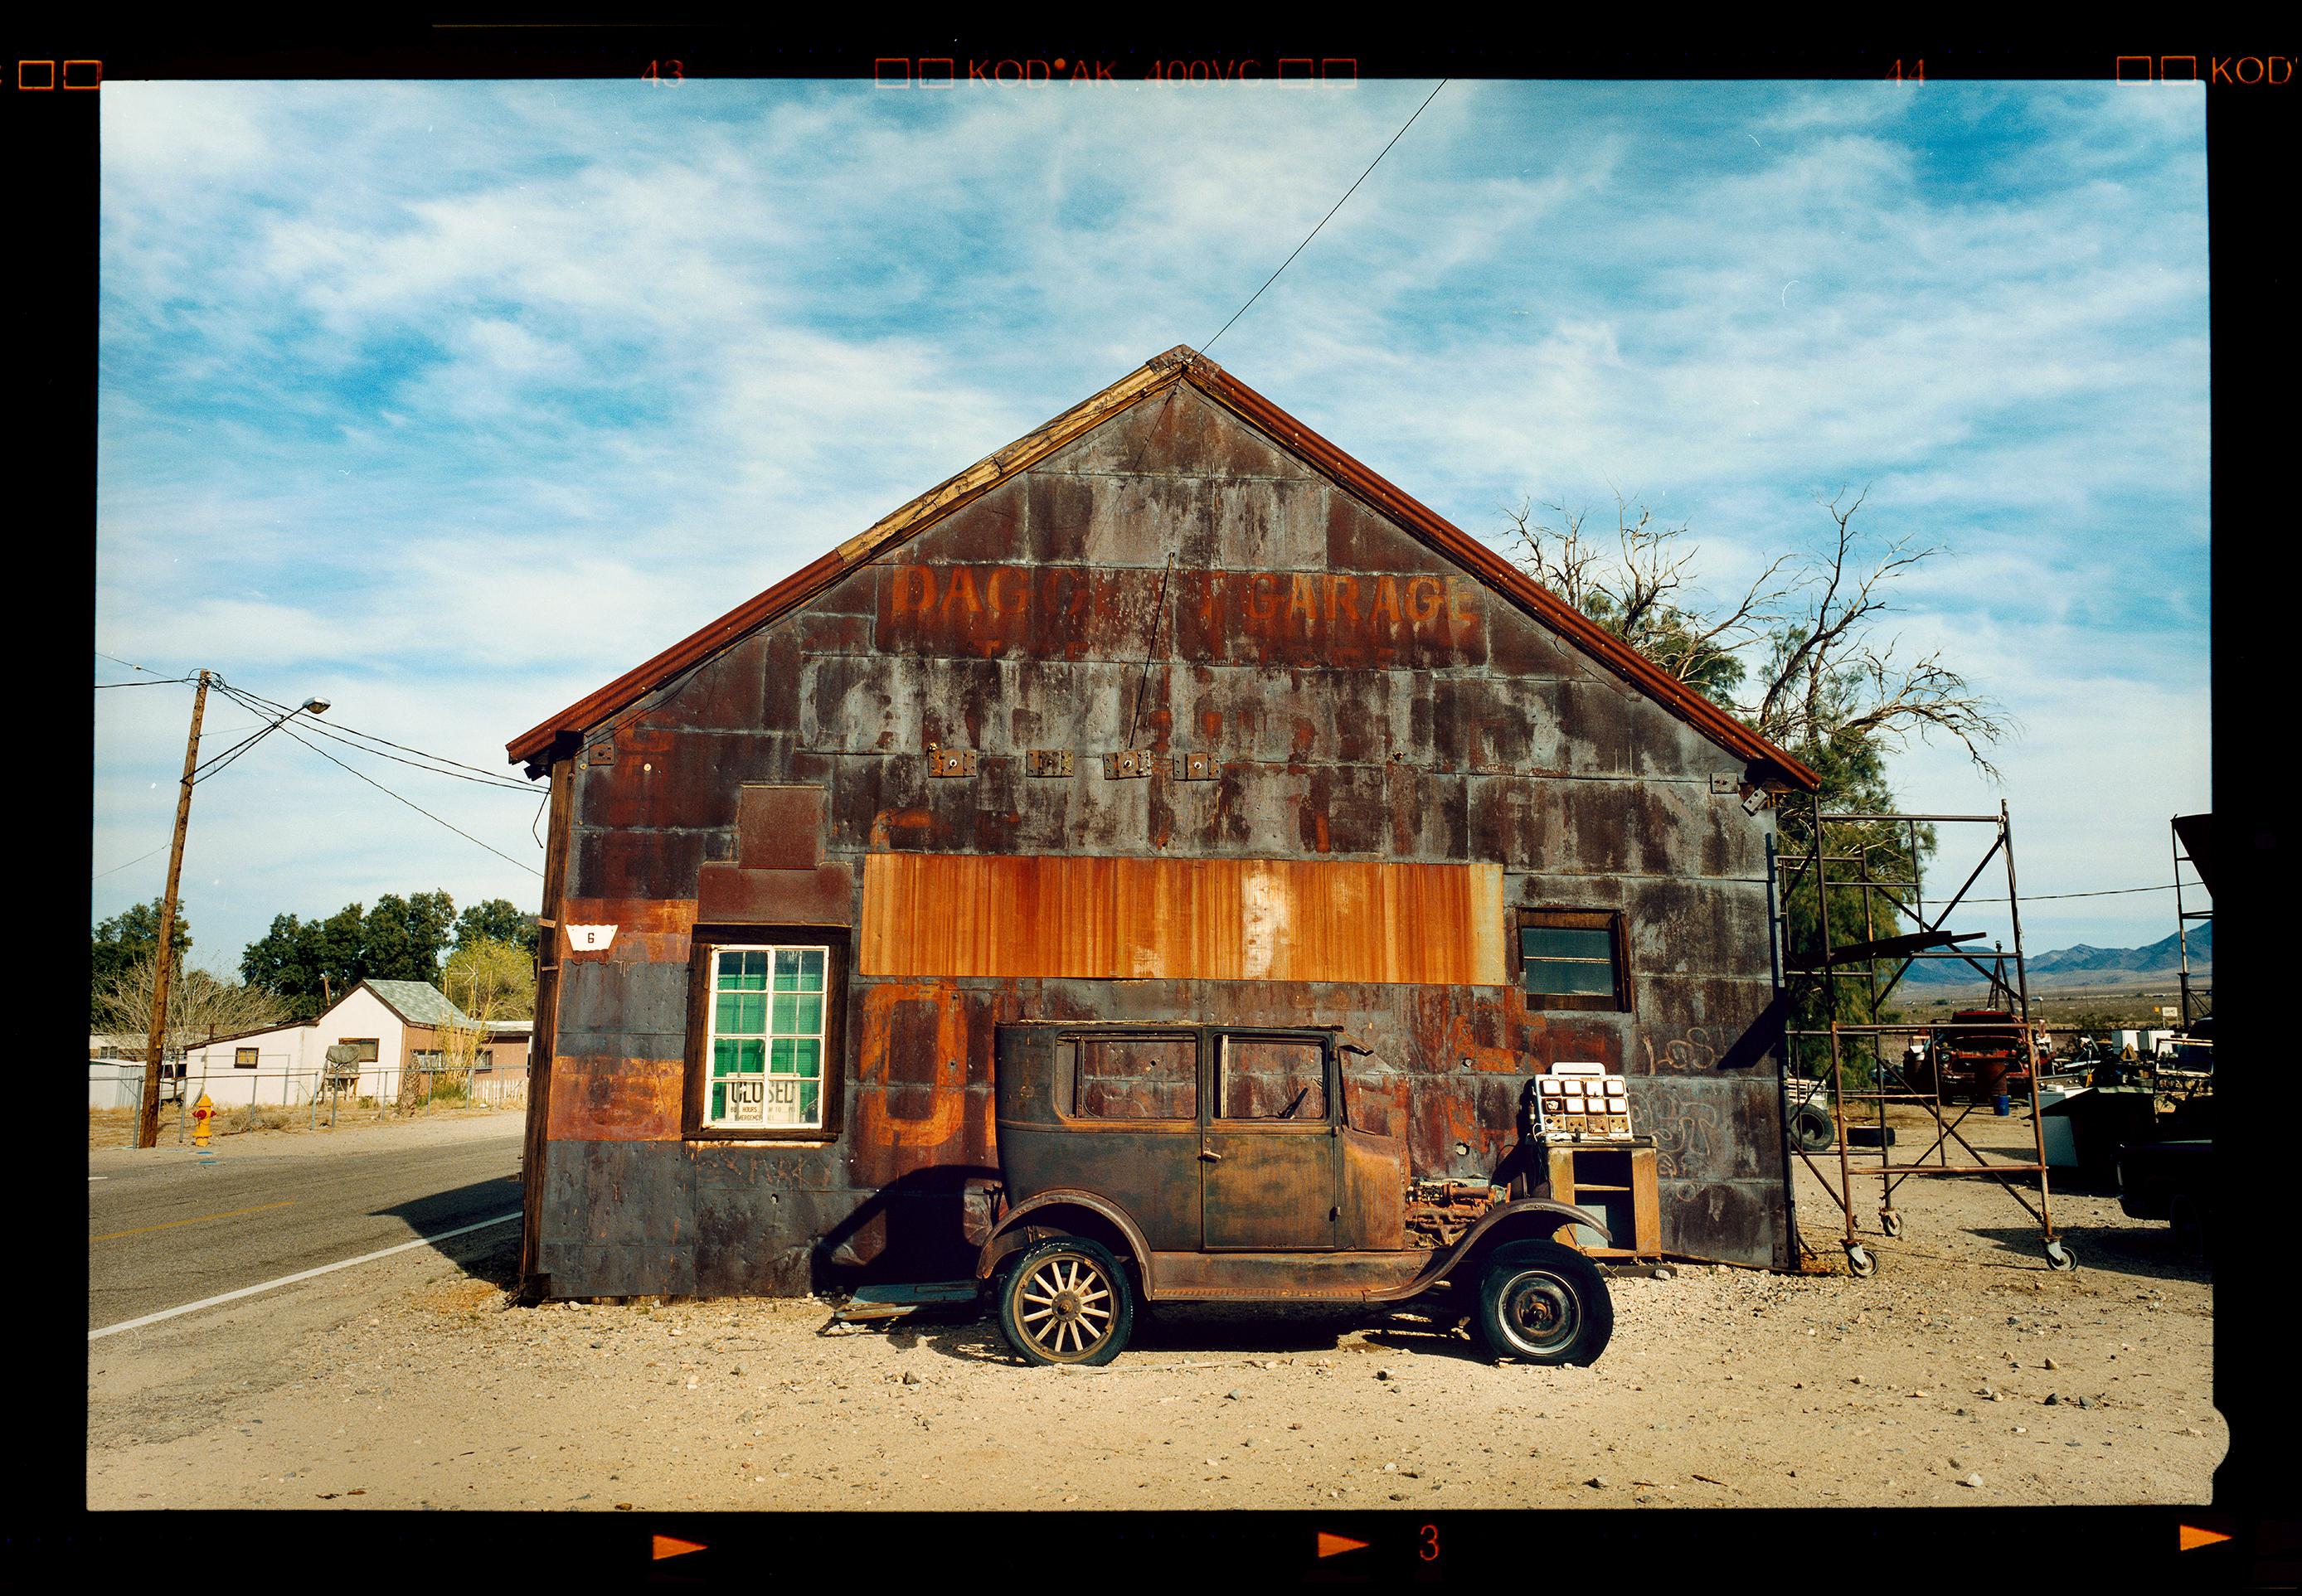 Landscape Photograph Richard Heeps - Modèle T et garage, Daggett, Californie - Photographie couleur